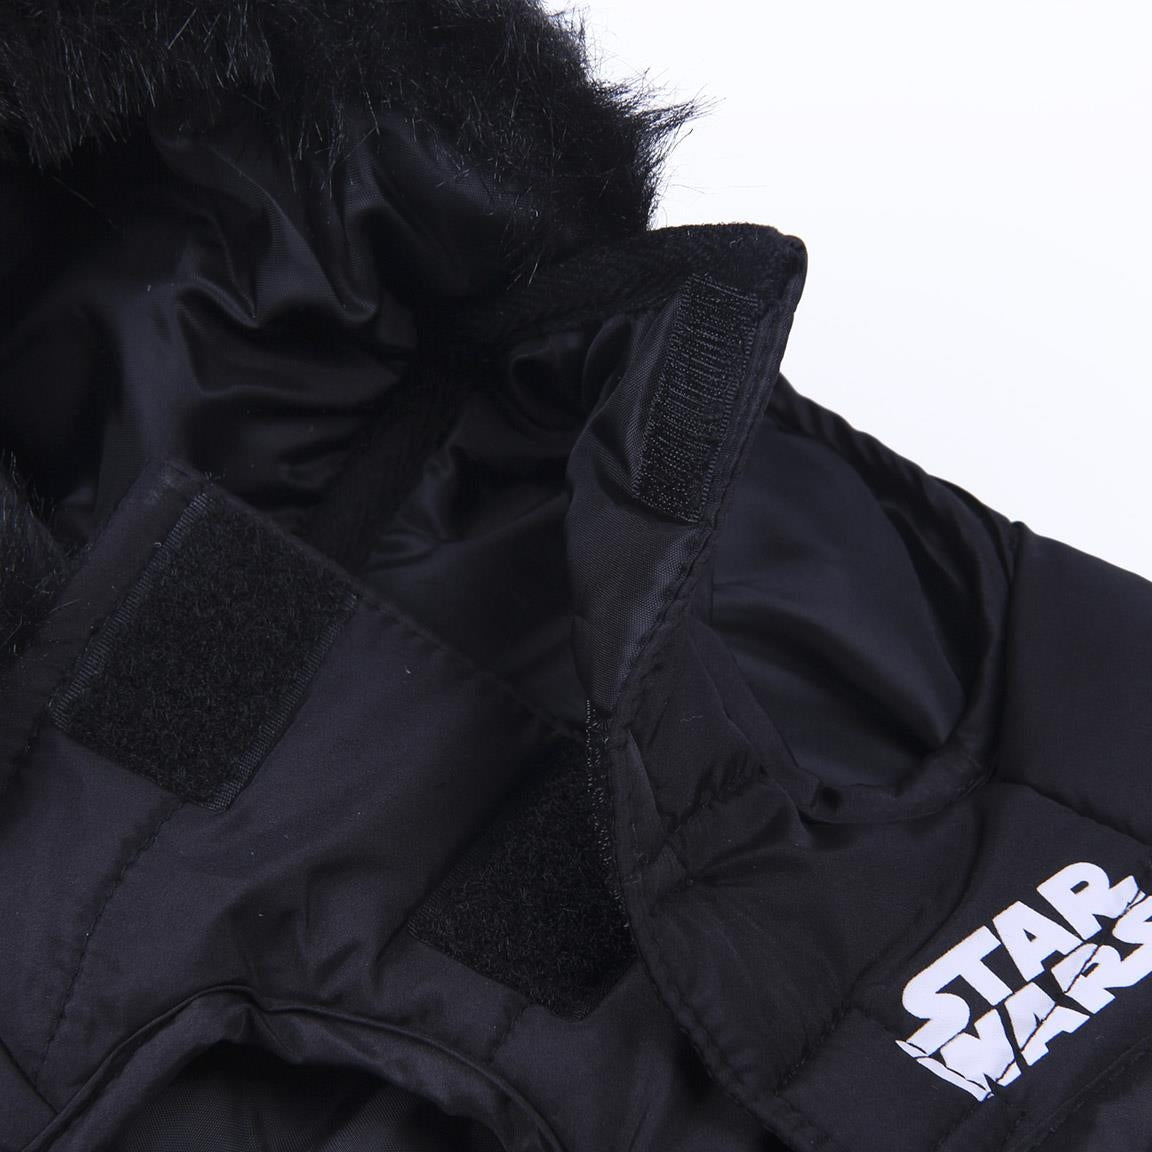 Cappotto invernale per cani Star Wars Darth Vader Taglia XS